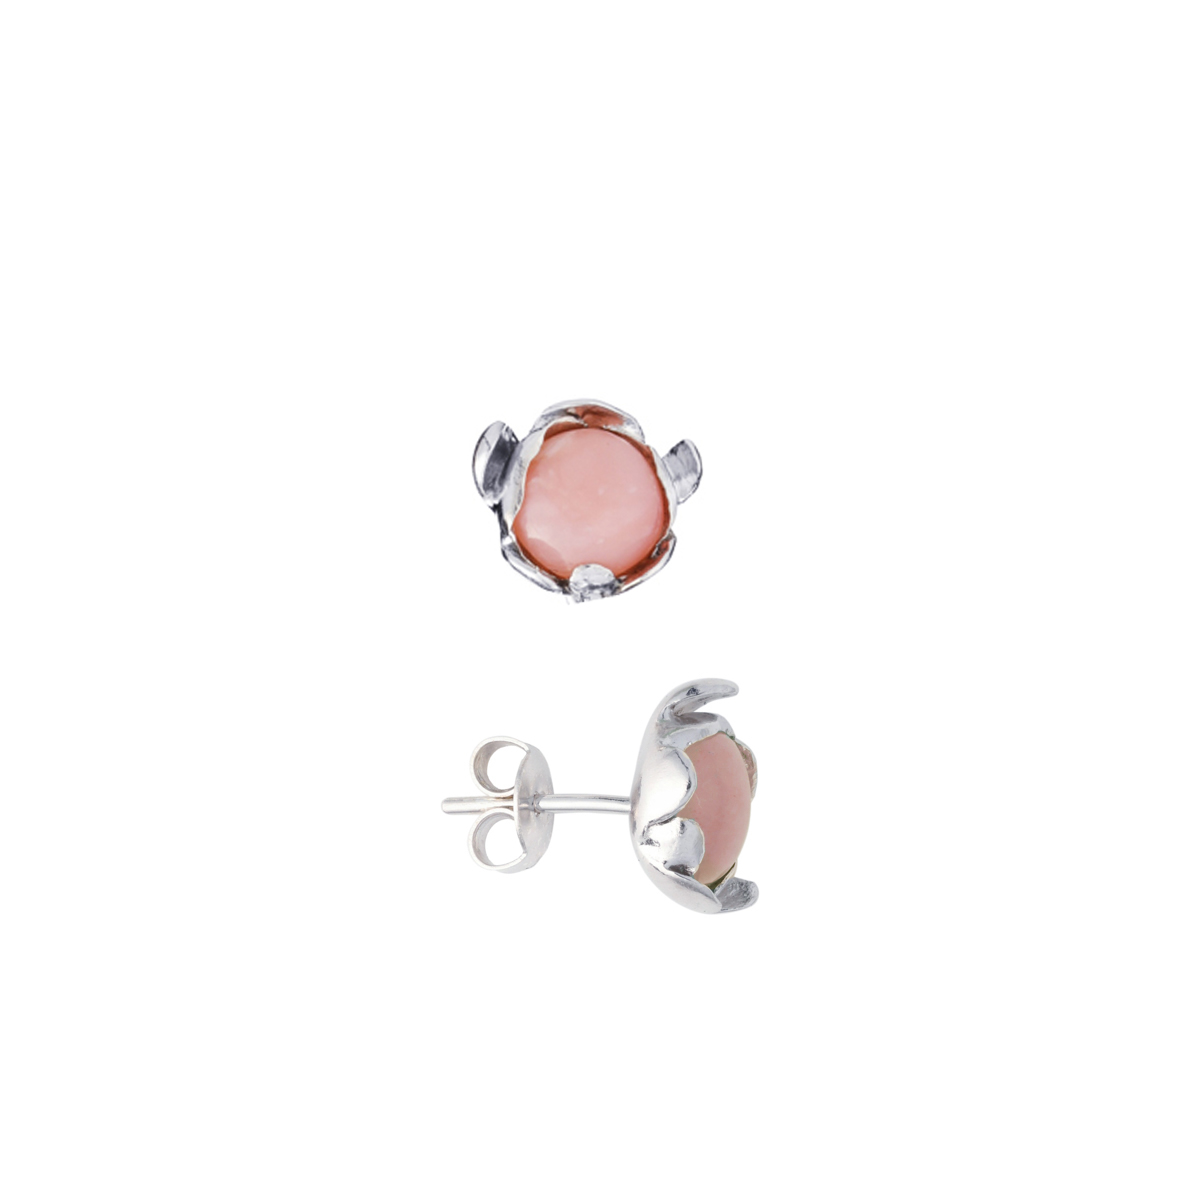 Elegant pink earrings